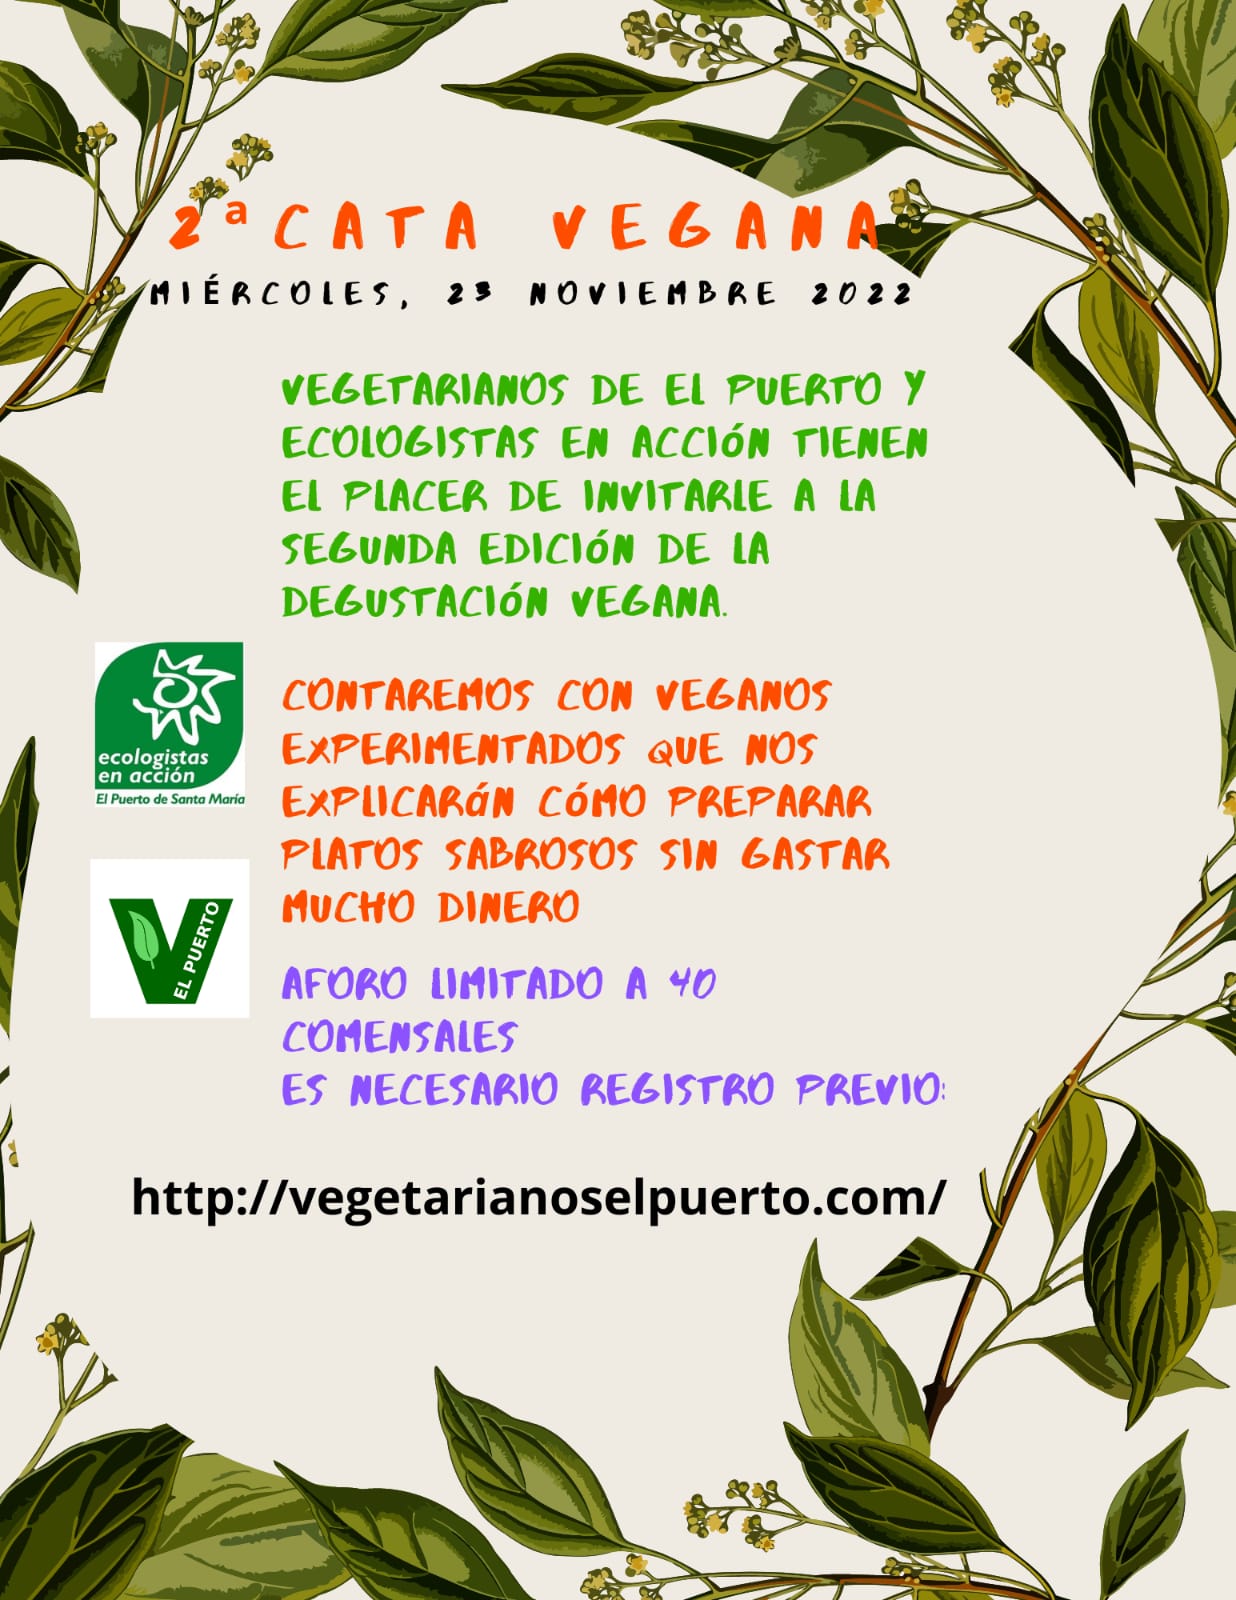 Cata Vegana 23 noviembre